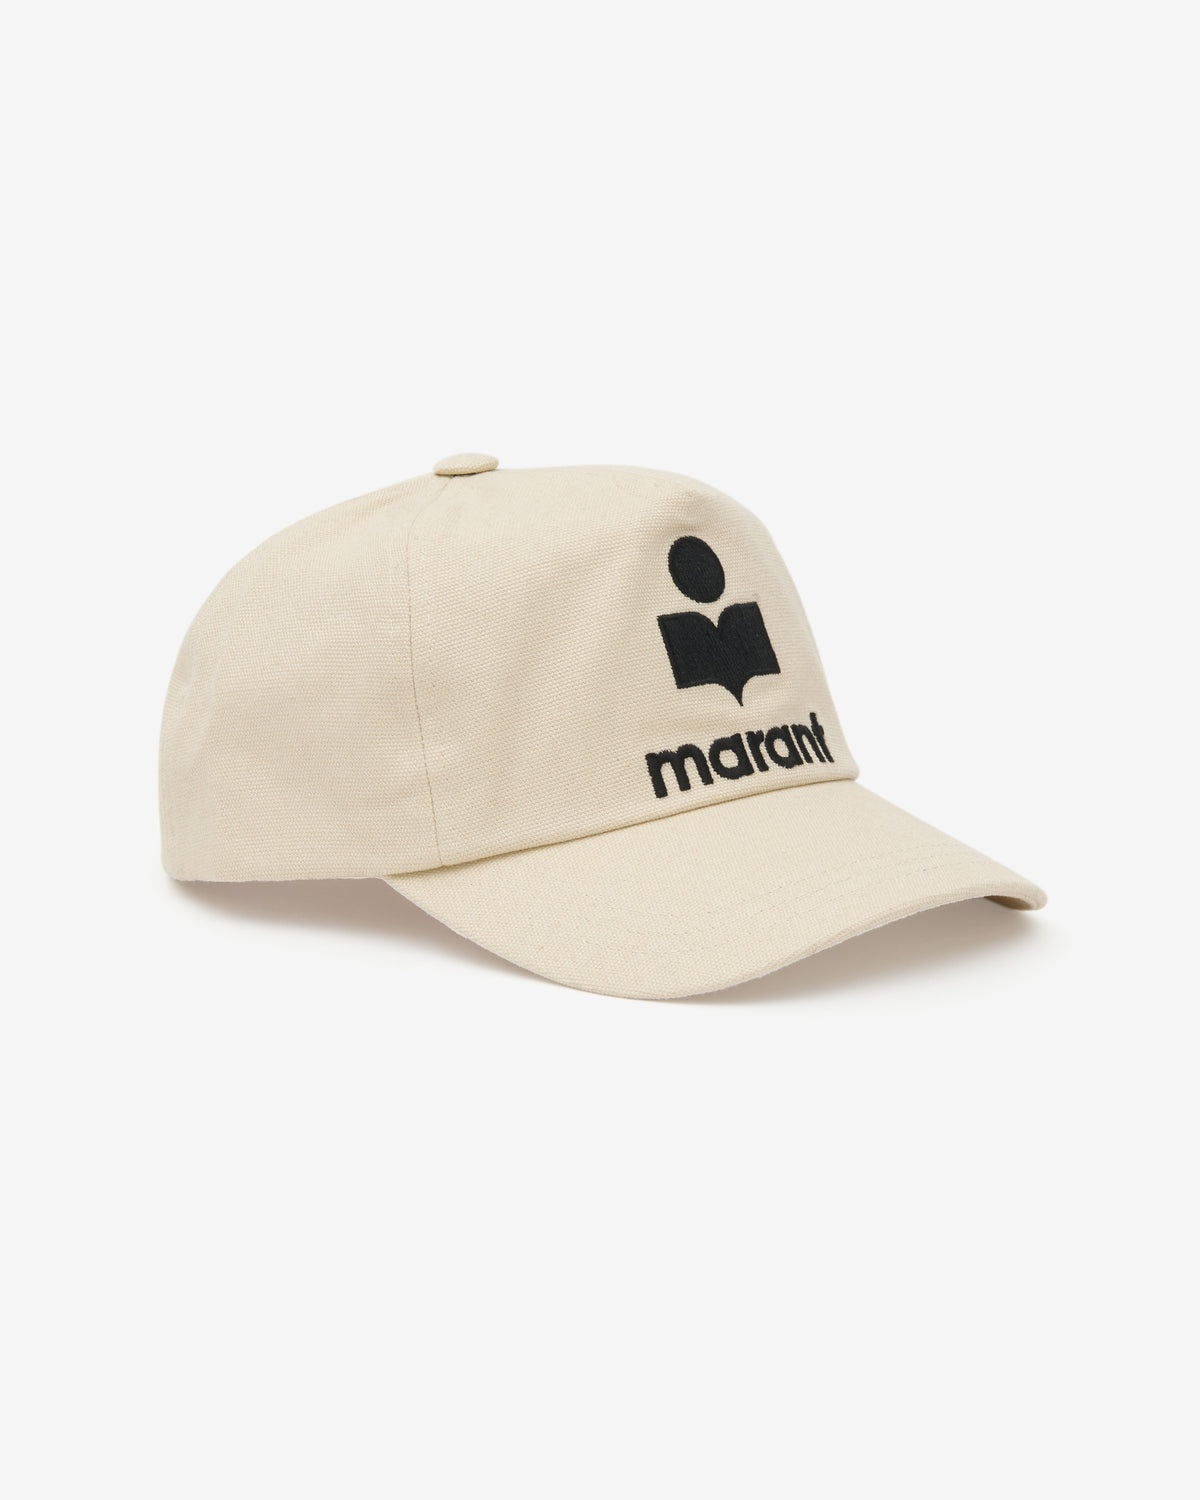 TYRON COTTON CAP - 1